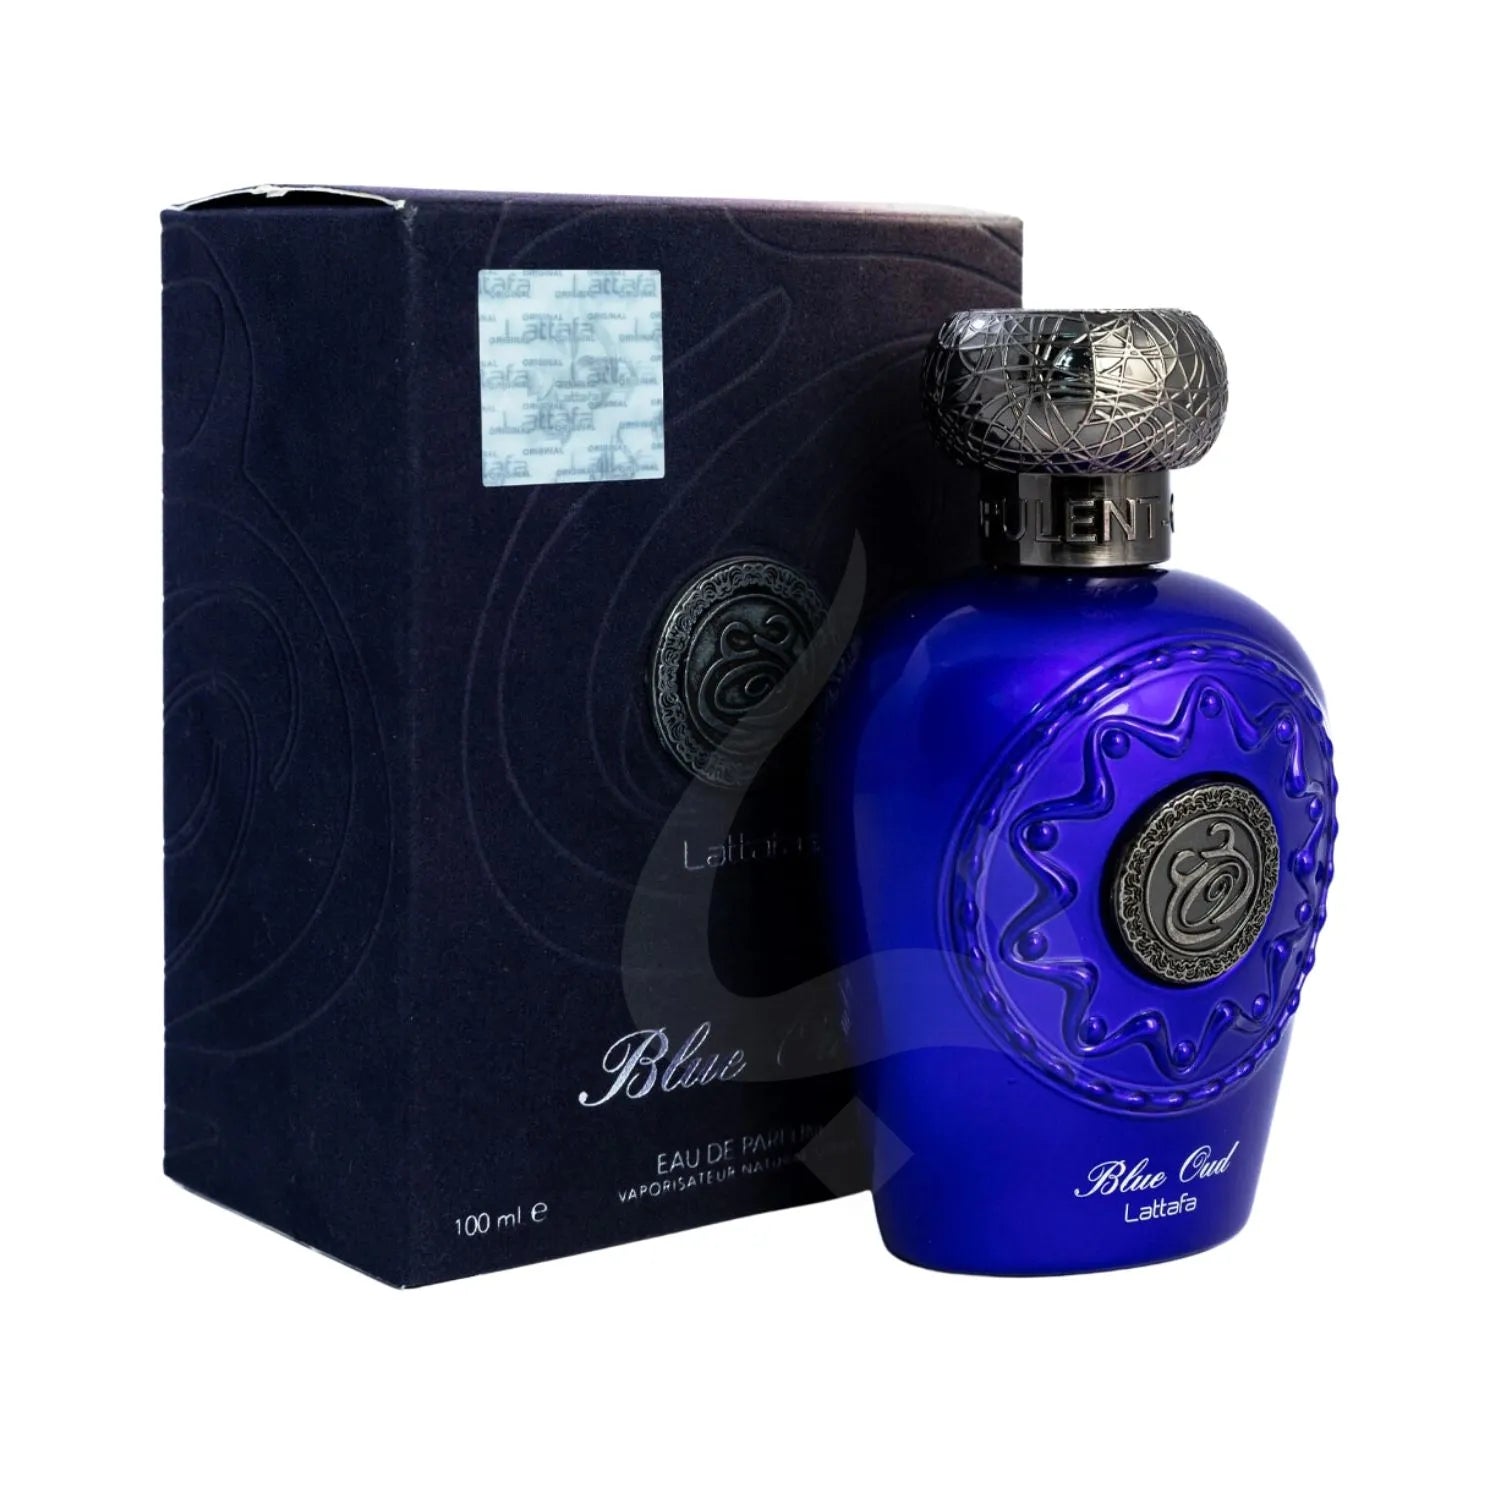 Blue Oud Perfume Package